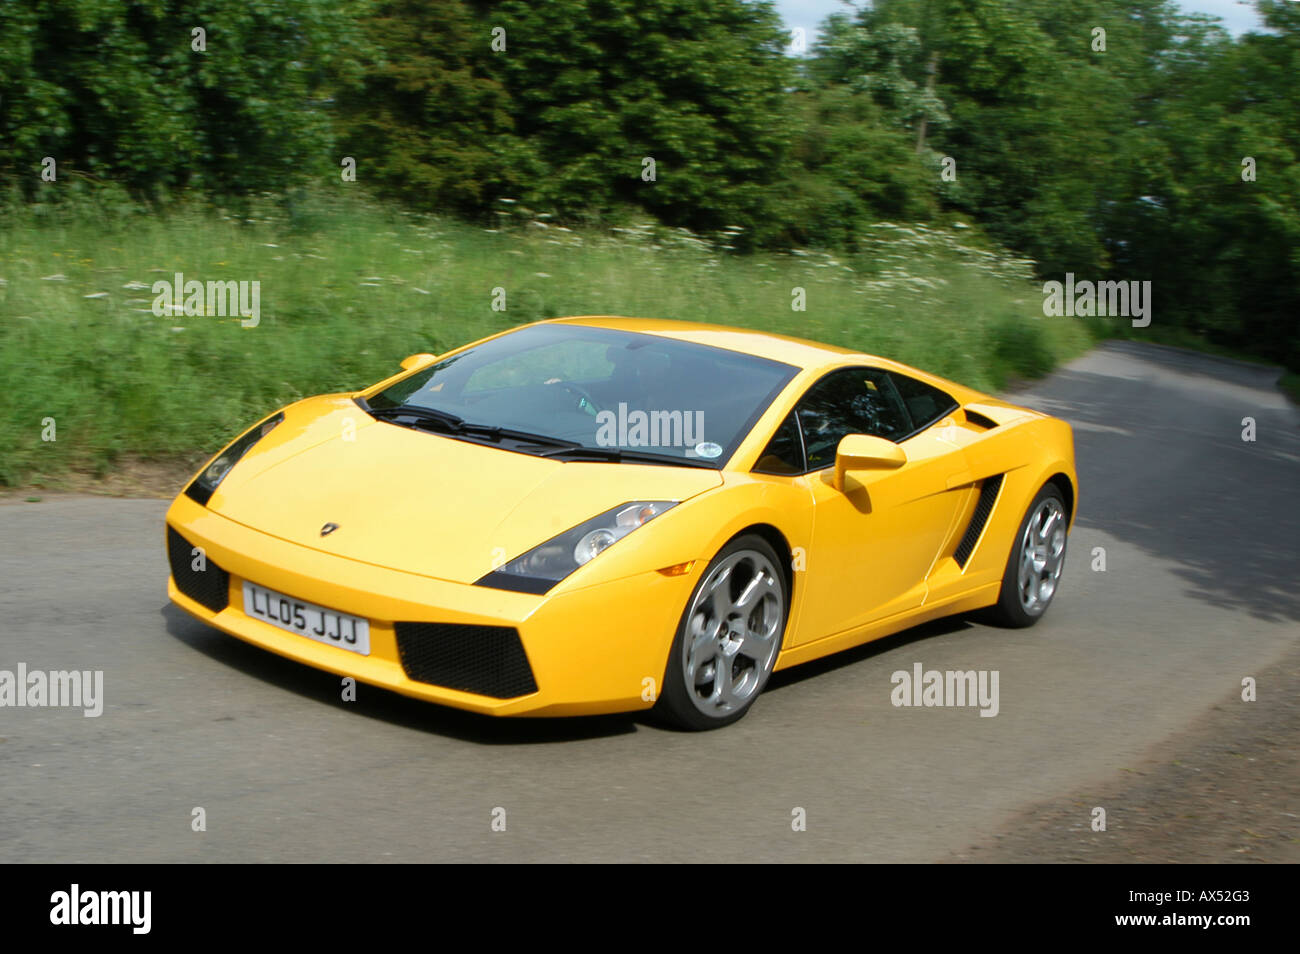 Gelbe Lamborghini Gallardo Sportwagen entlang einer Straße in der englischen Landschaft zu beschleunigen Stockfoto